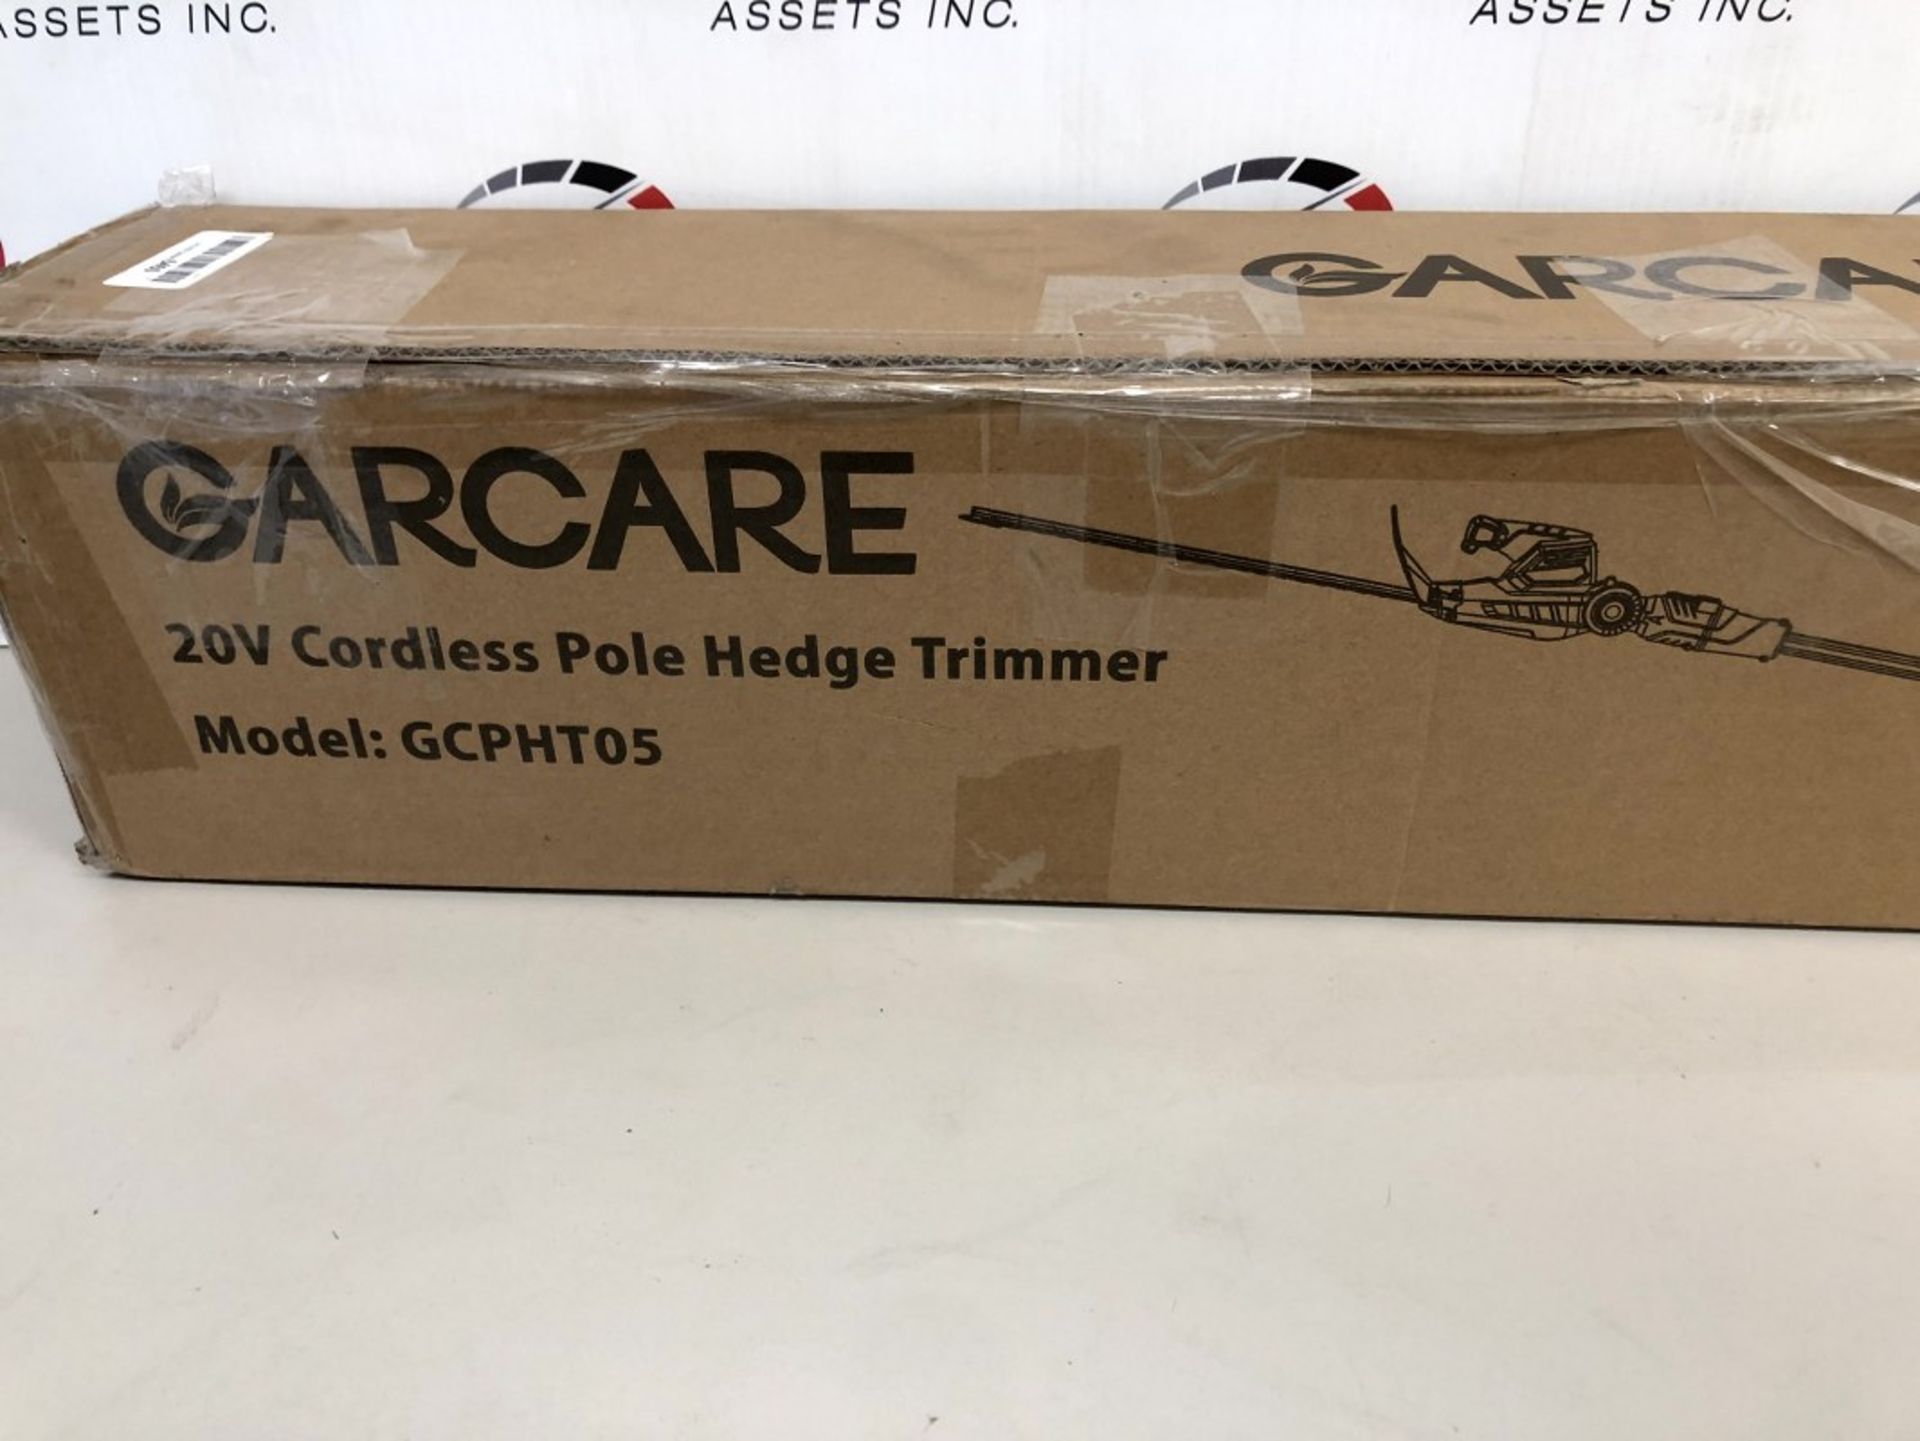 Garcare- 20V Cordless Pole Hedge Trimmer - Image 2 of 3